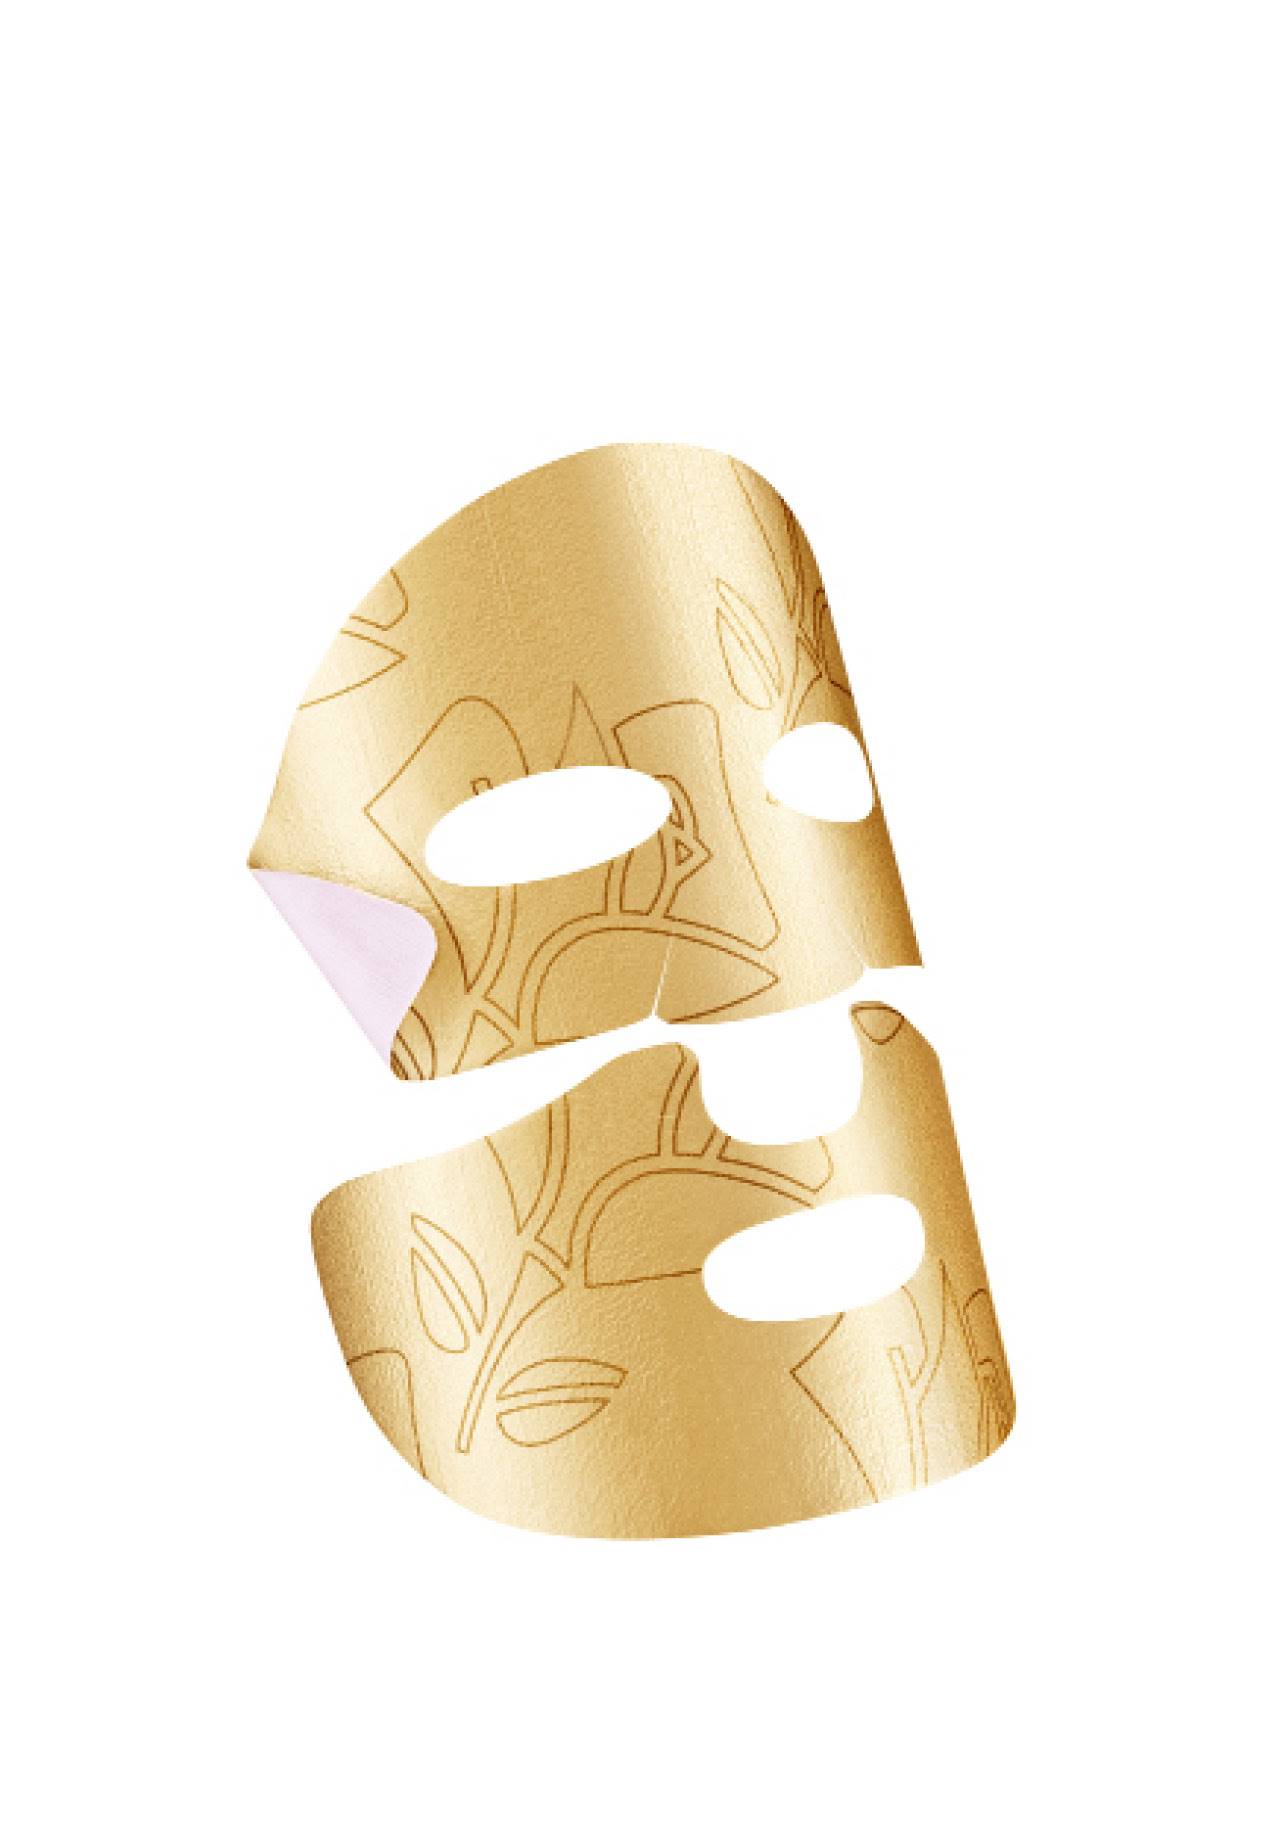 Cosmetica iluminadora Mascarilla facial Absolue Golden Mask de Lancôme